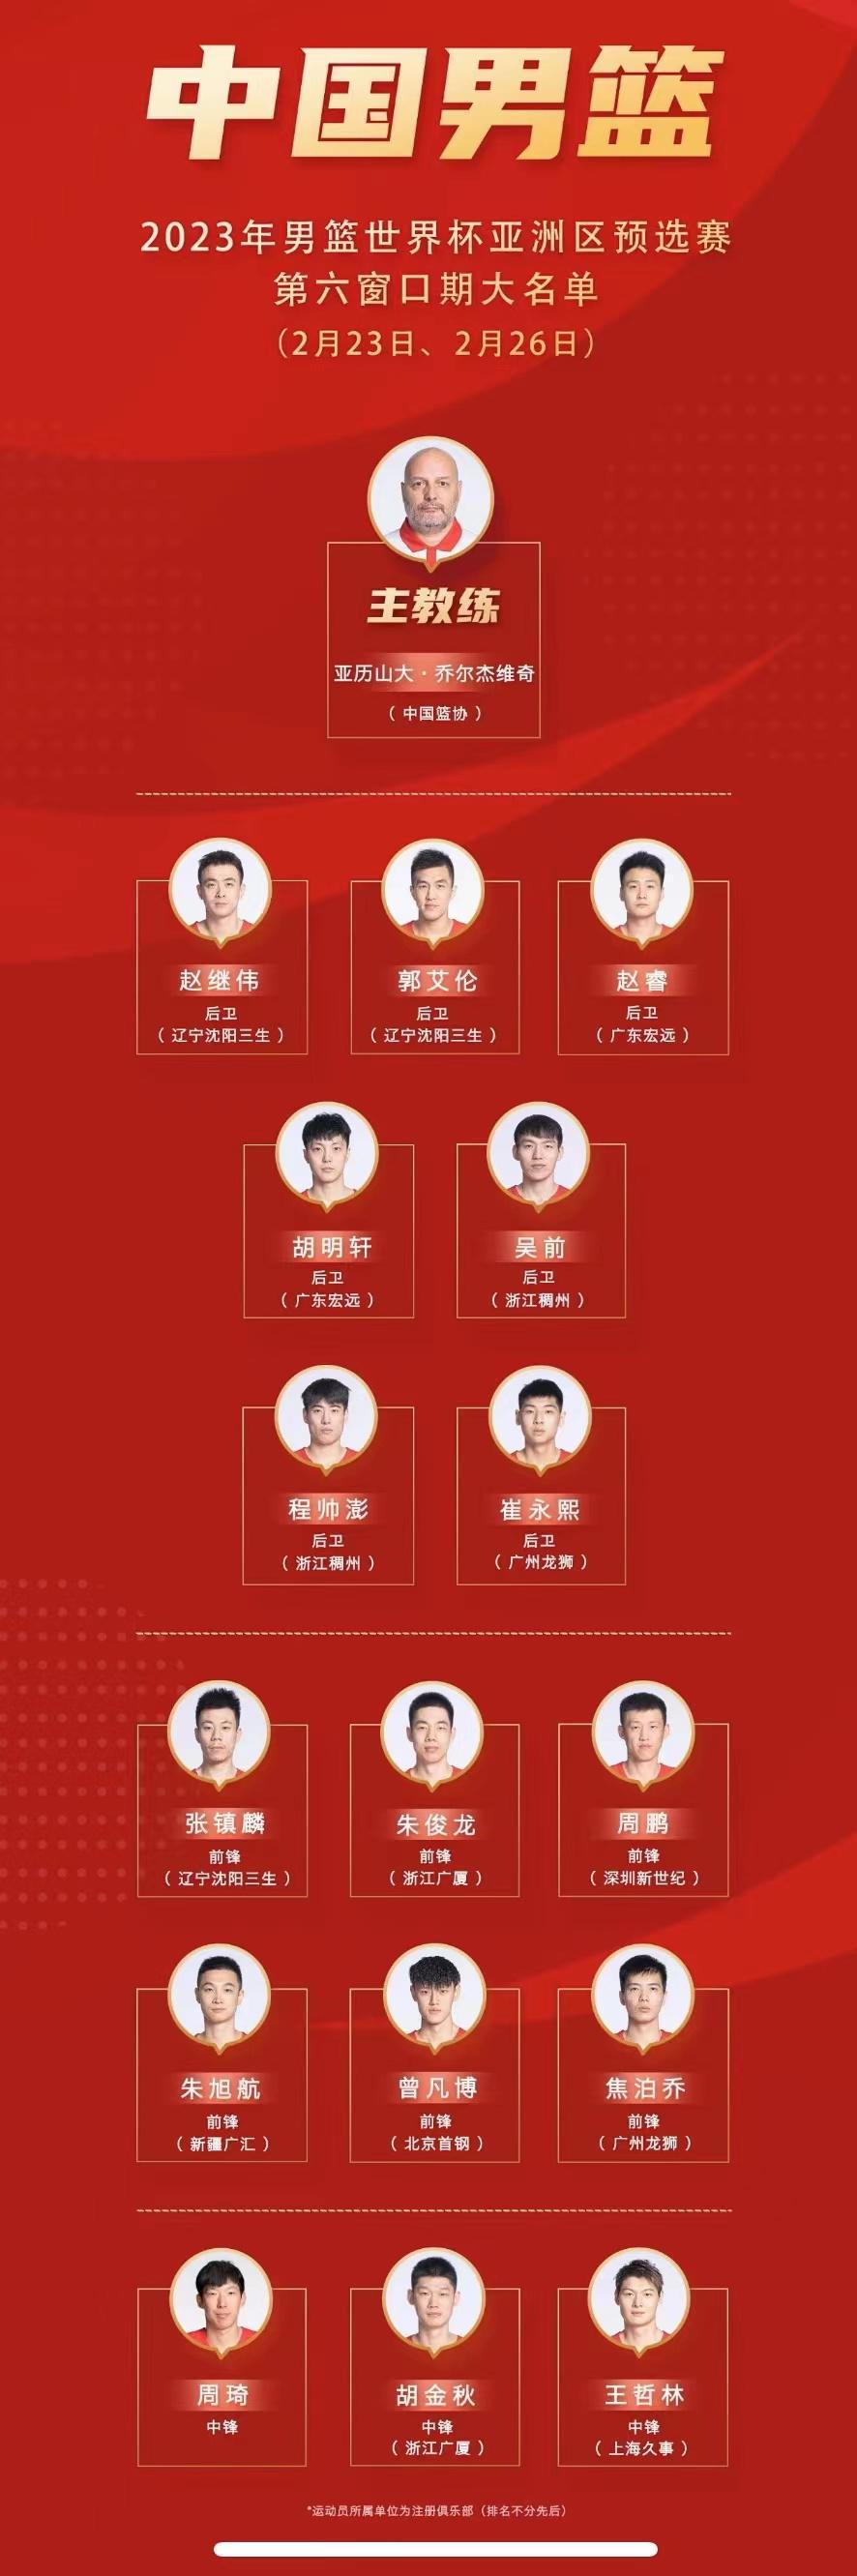 中国男篮世预赛16人大名单公布 第六窗口期首场比赛将于23日进行(1)